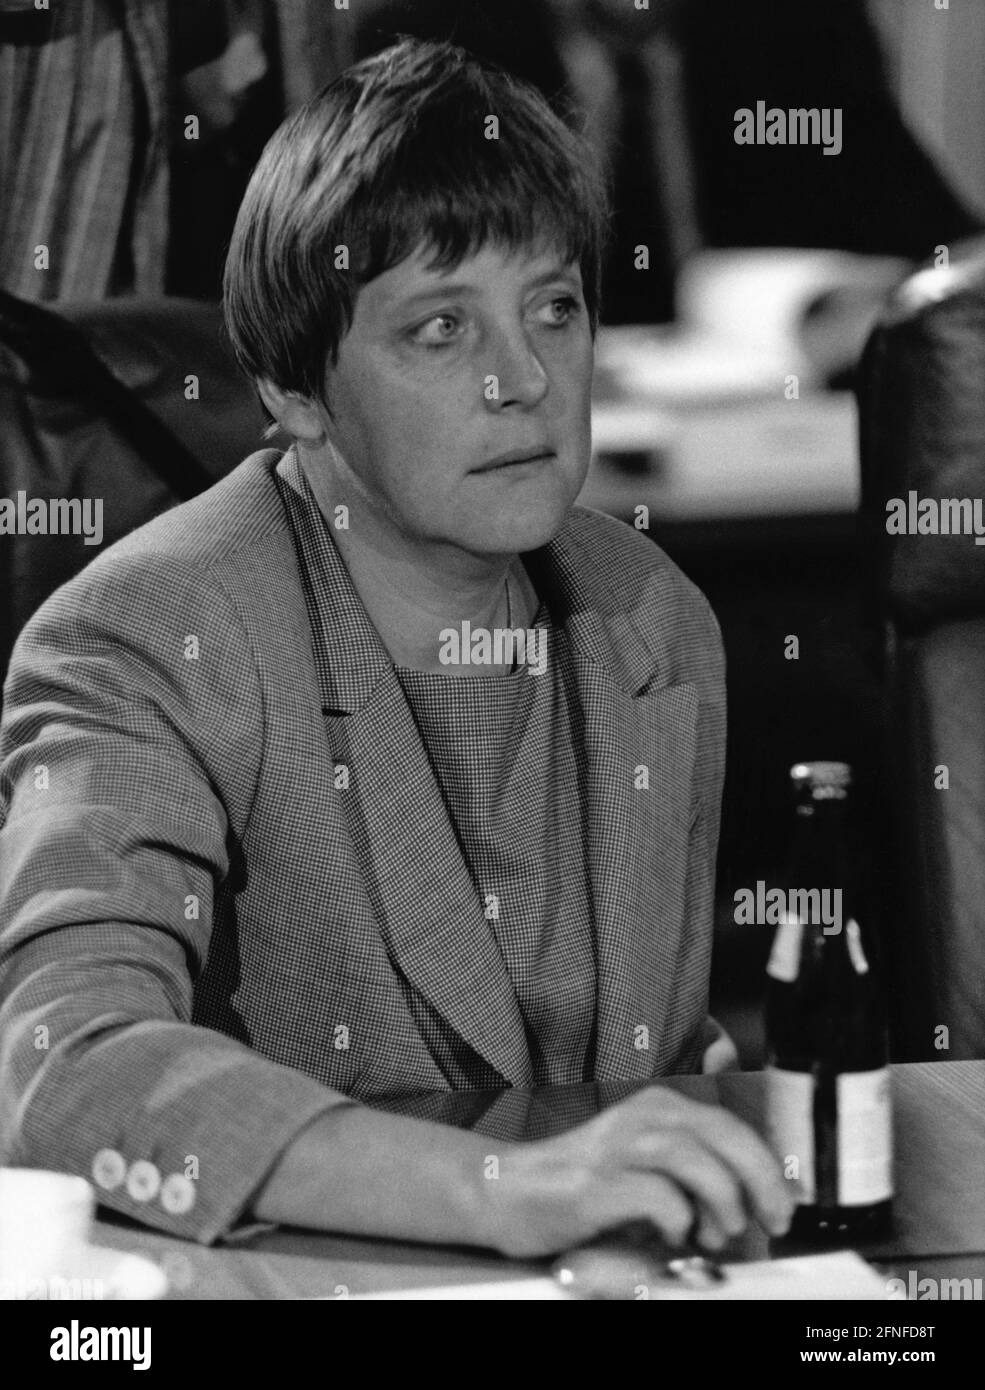 La ministre fédérale de l'Environnement, Angela Merkel. [traduction automatique] Banque D'Images